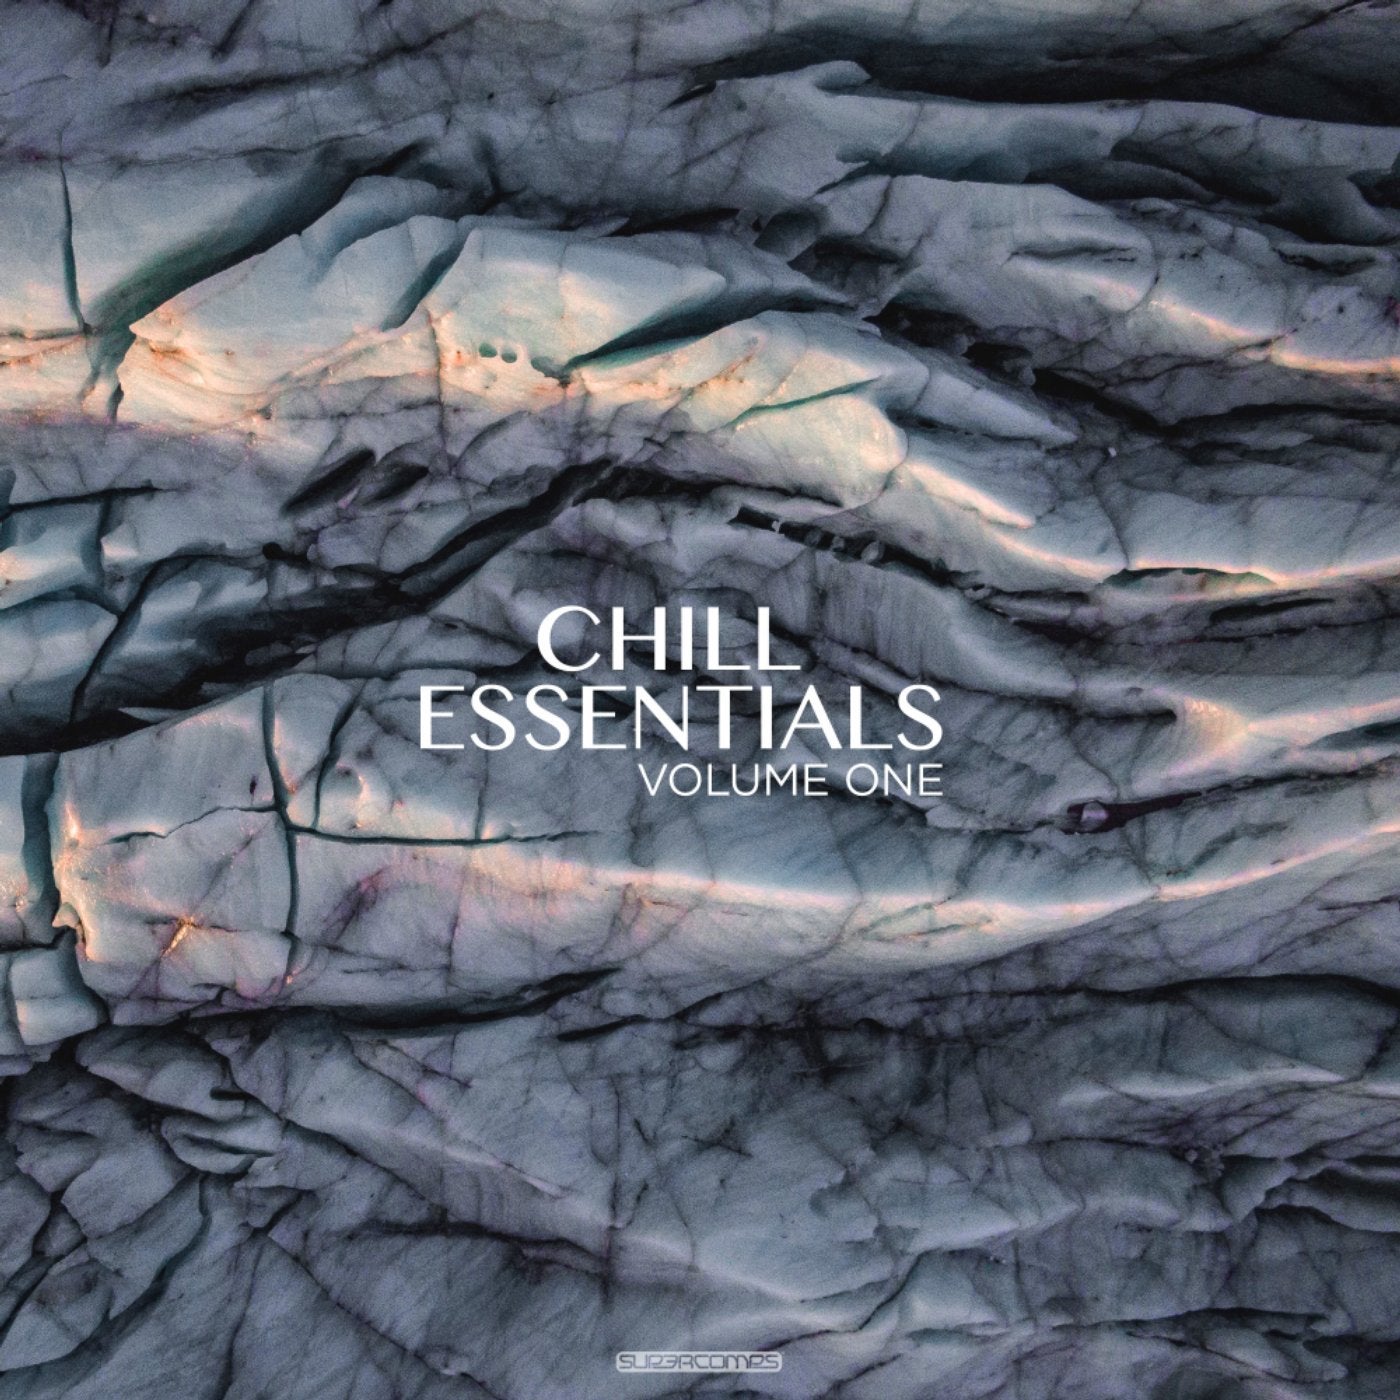 Chill Essentials Volume One